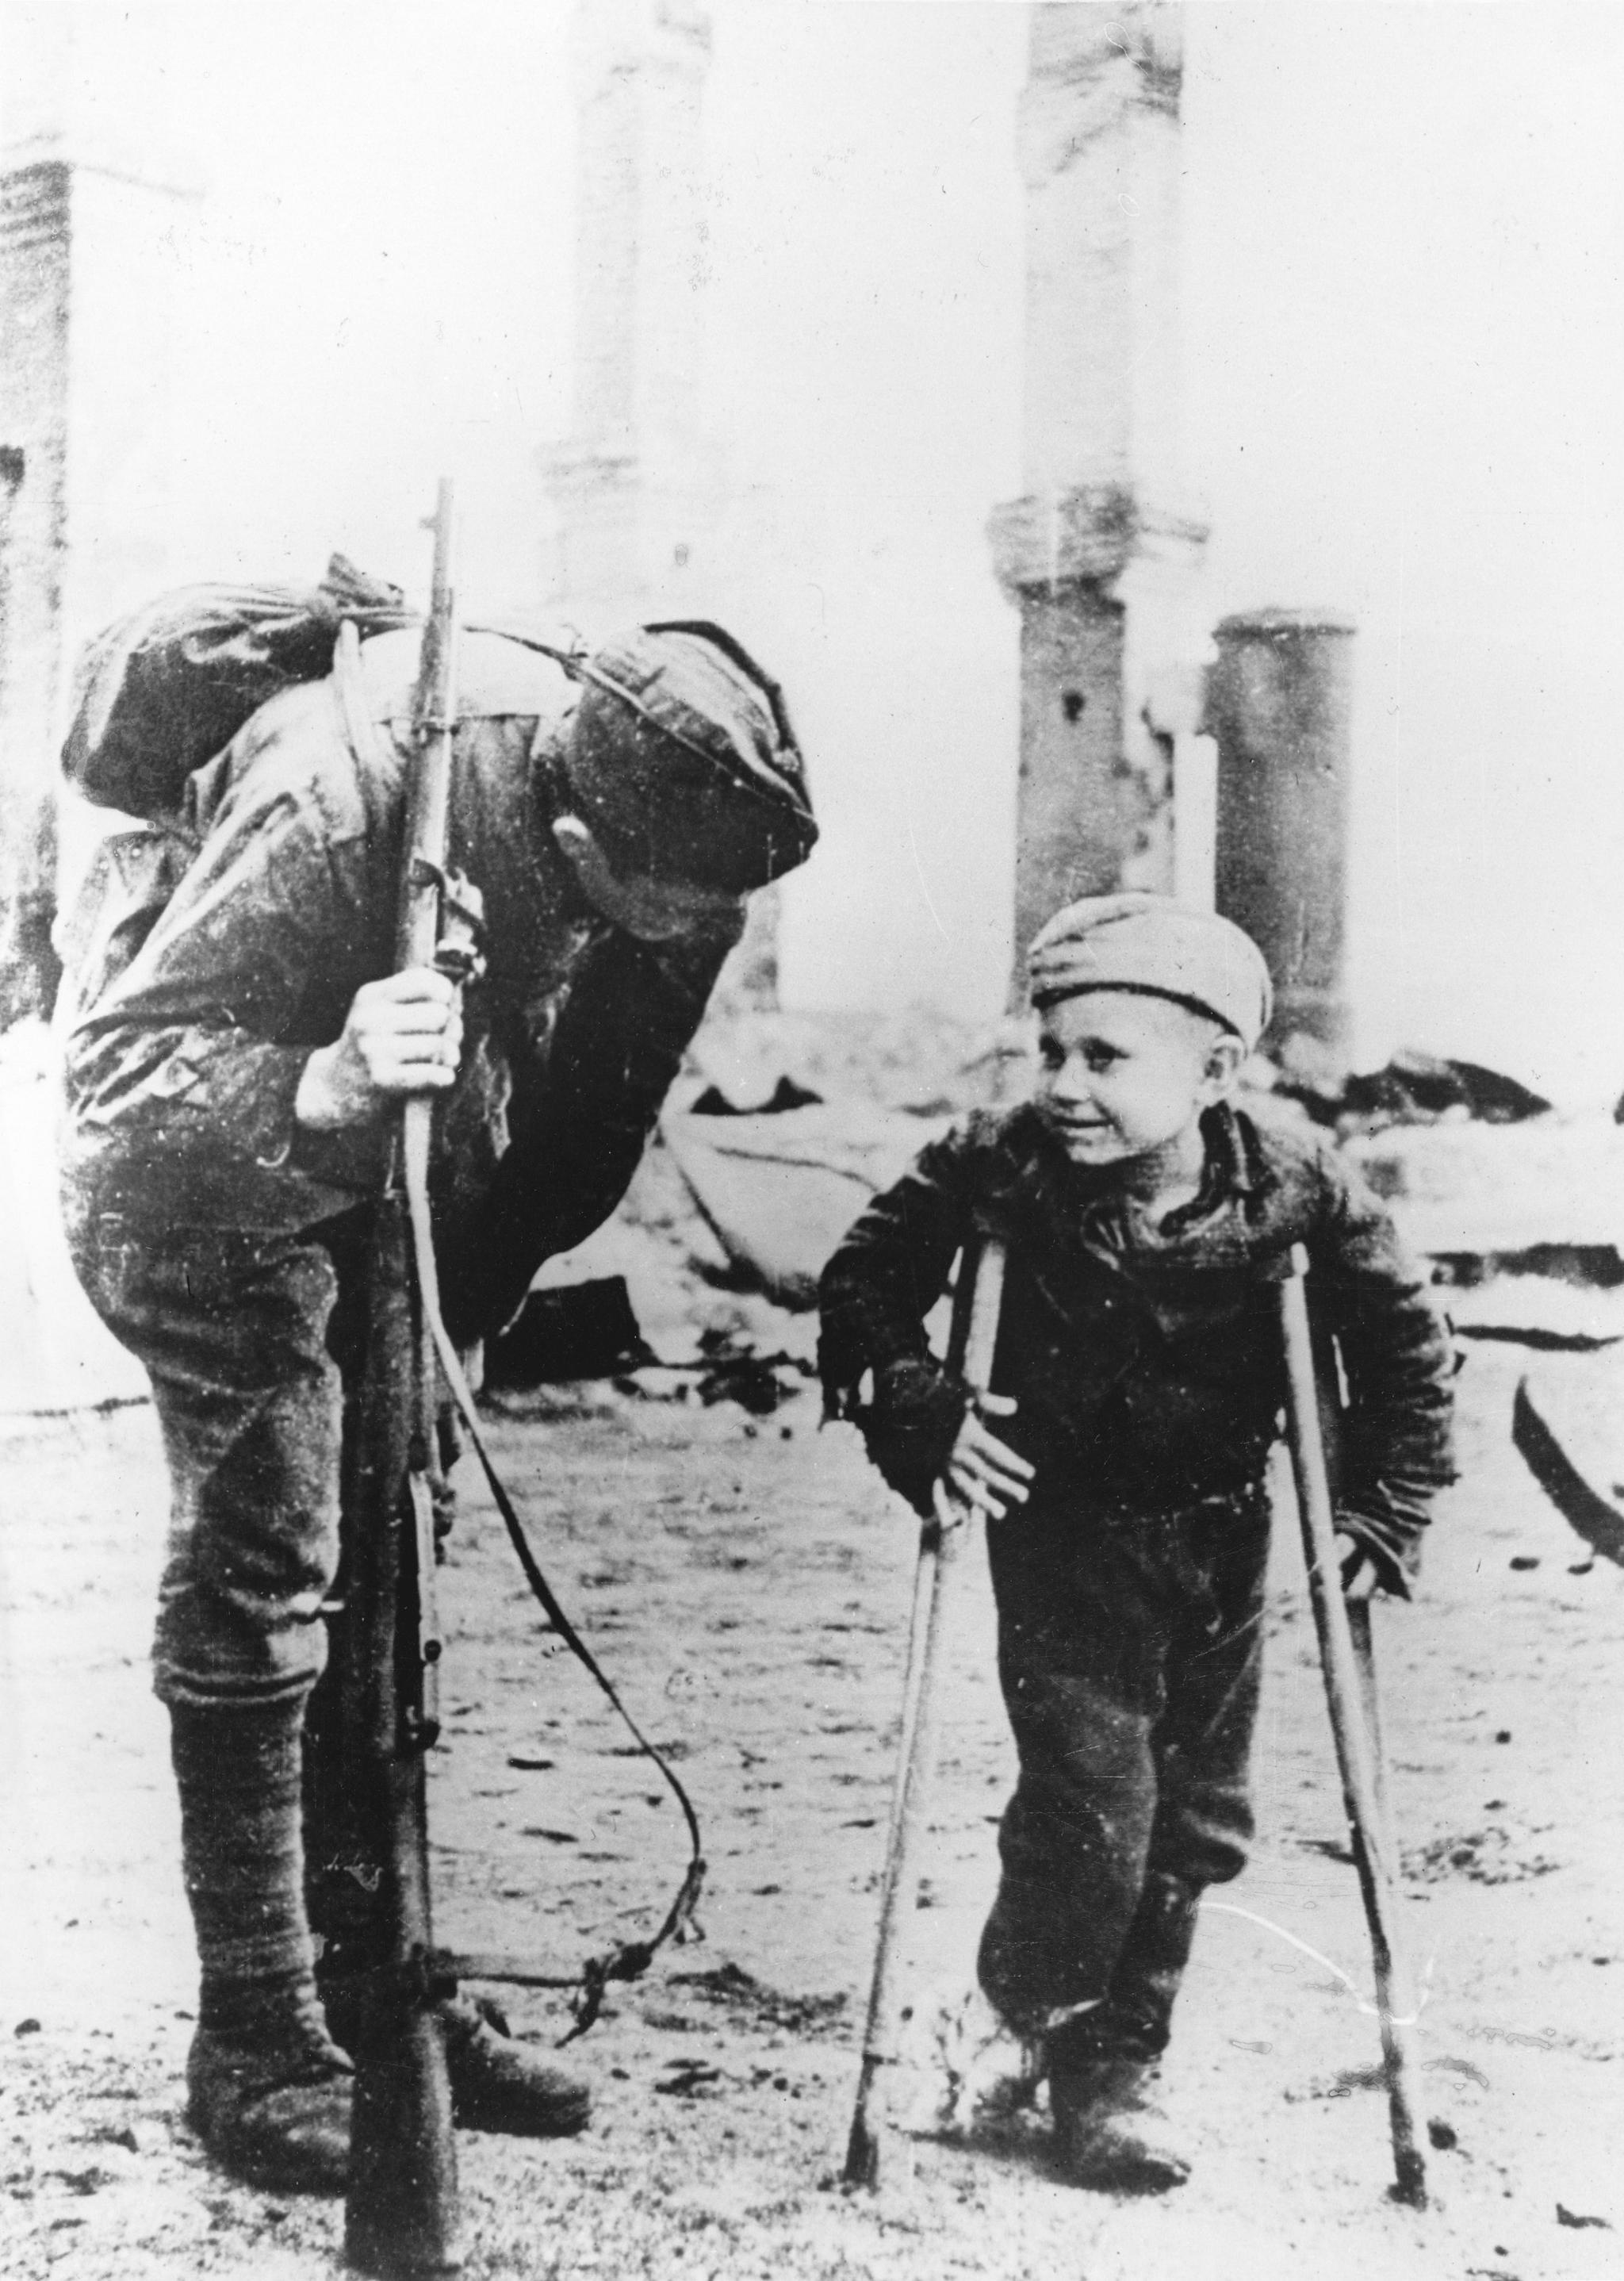 Russland har ført eller mobilisert til krig omtrent sammenhengende i fem hundre år, skriver kronikkforfatteren. Bildet viser en sovjetrussisk soldat på Østfronten og en gutt som har fått føttene frostskadet.